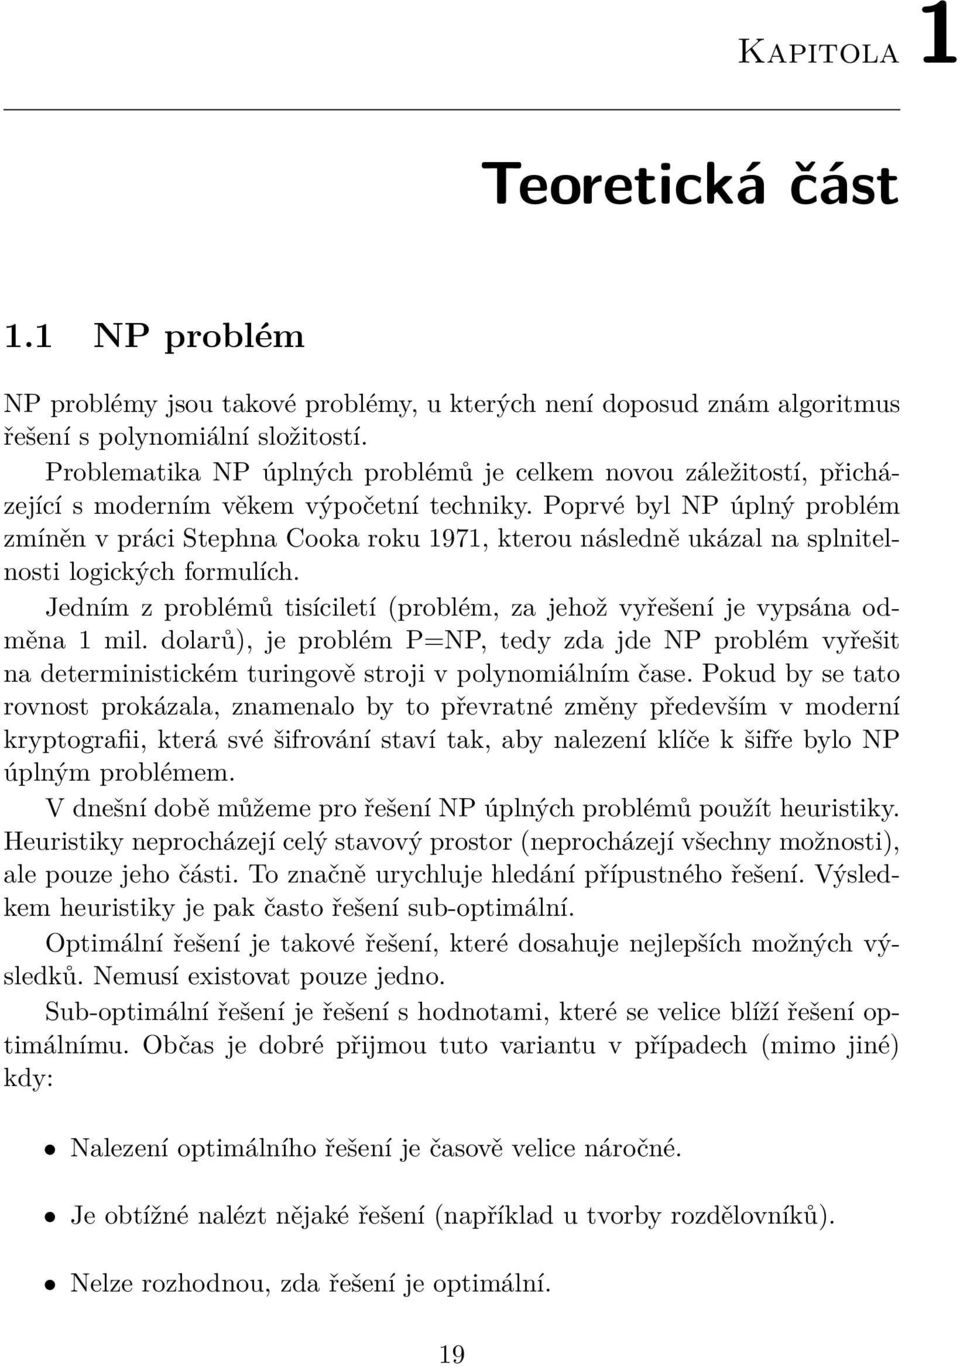 Poprvé byl NP úplný problém zmíněn v práci Stephna Cooka roku 1971, kterou následně ukázal na splnitelnosti logických formulích.